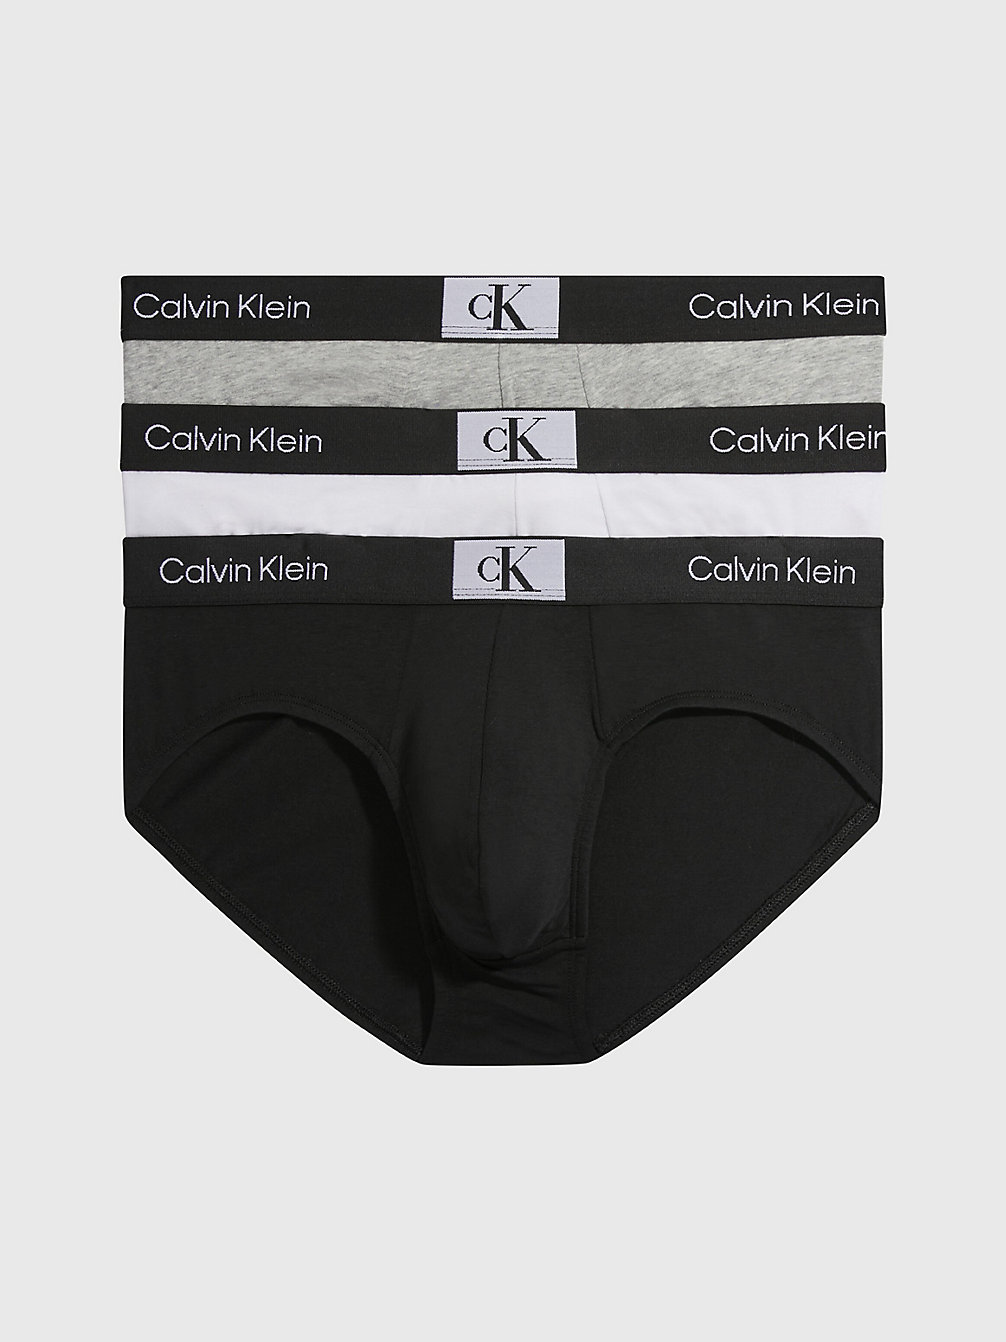 BLACK/WHITE/GREY HEATHER > 3-Pack Slips - Ck96 > undefined heren - Calvin Klein